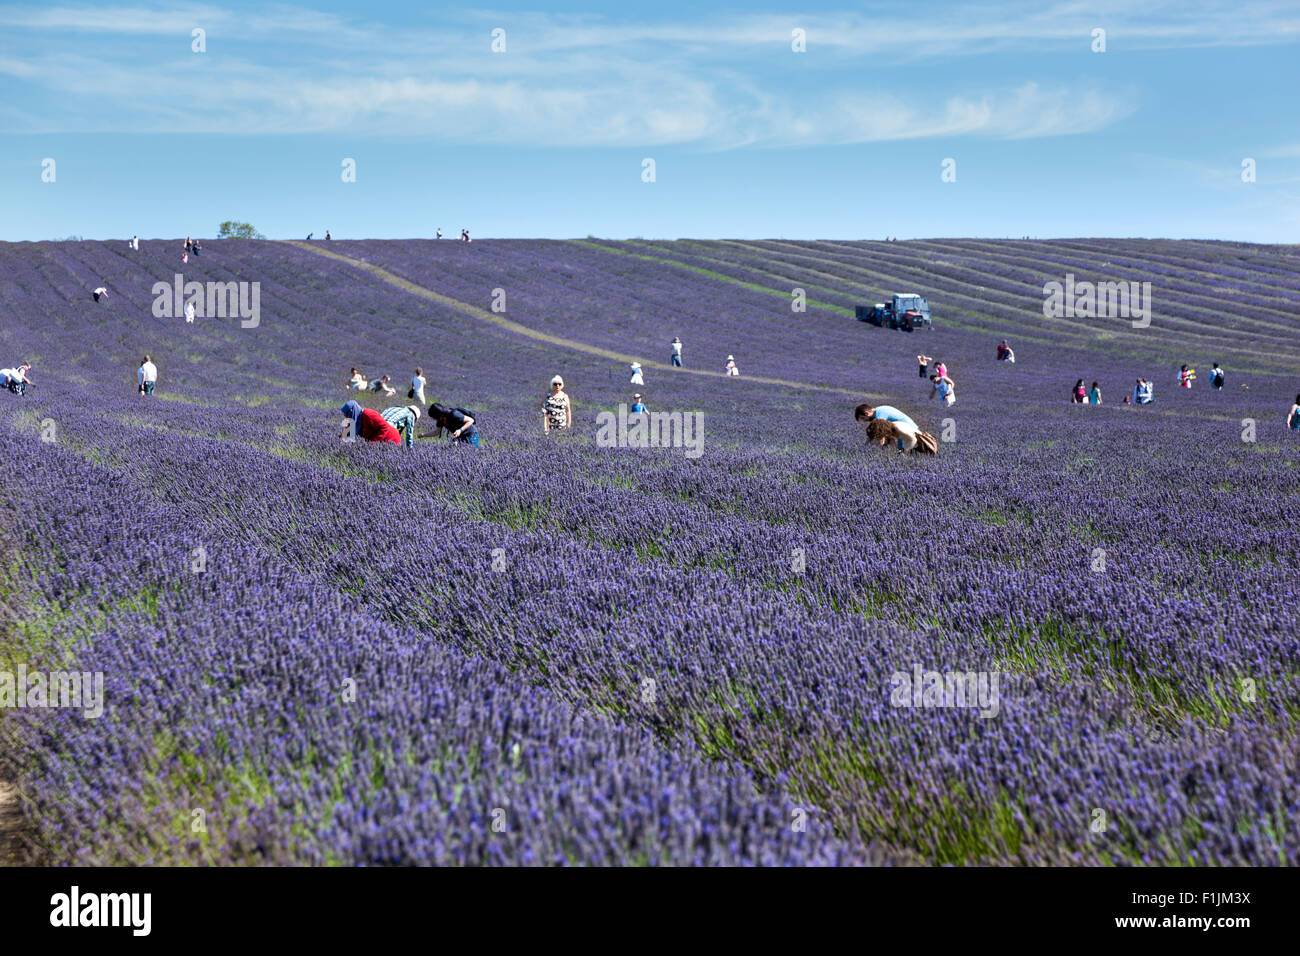 Les gens ramasser dans un champ de lavande, Hitchin UK Banque D'Images